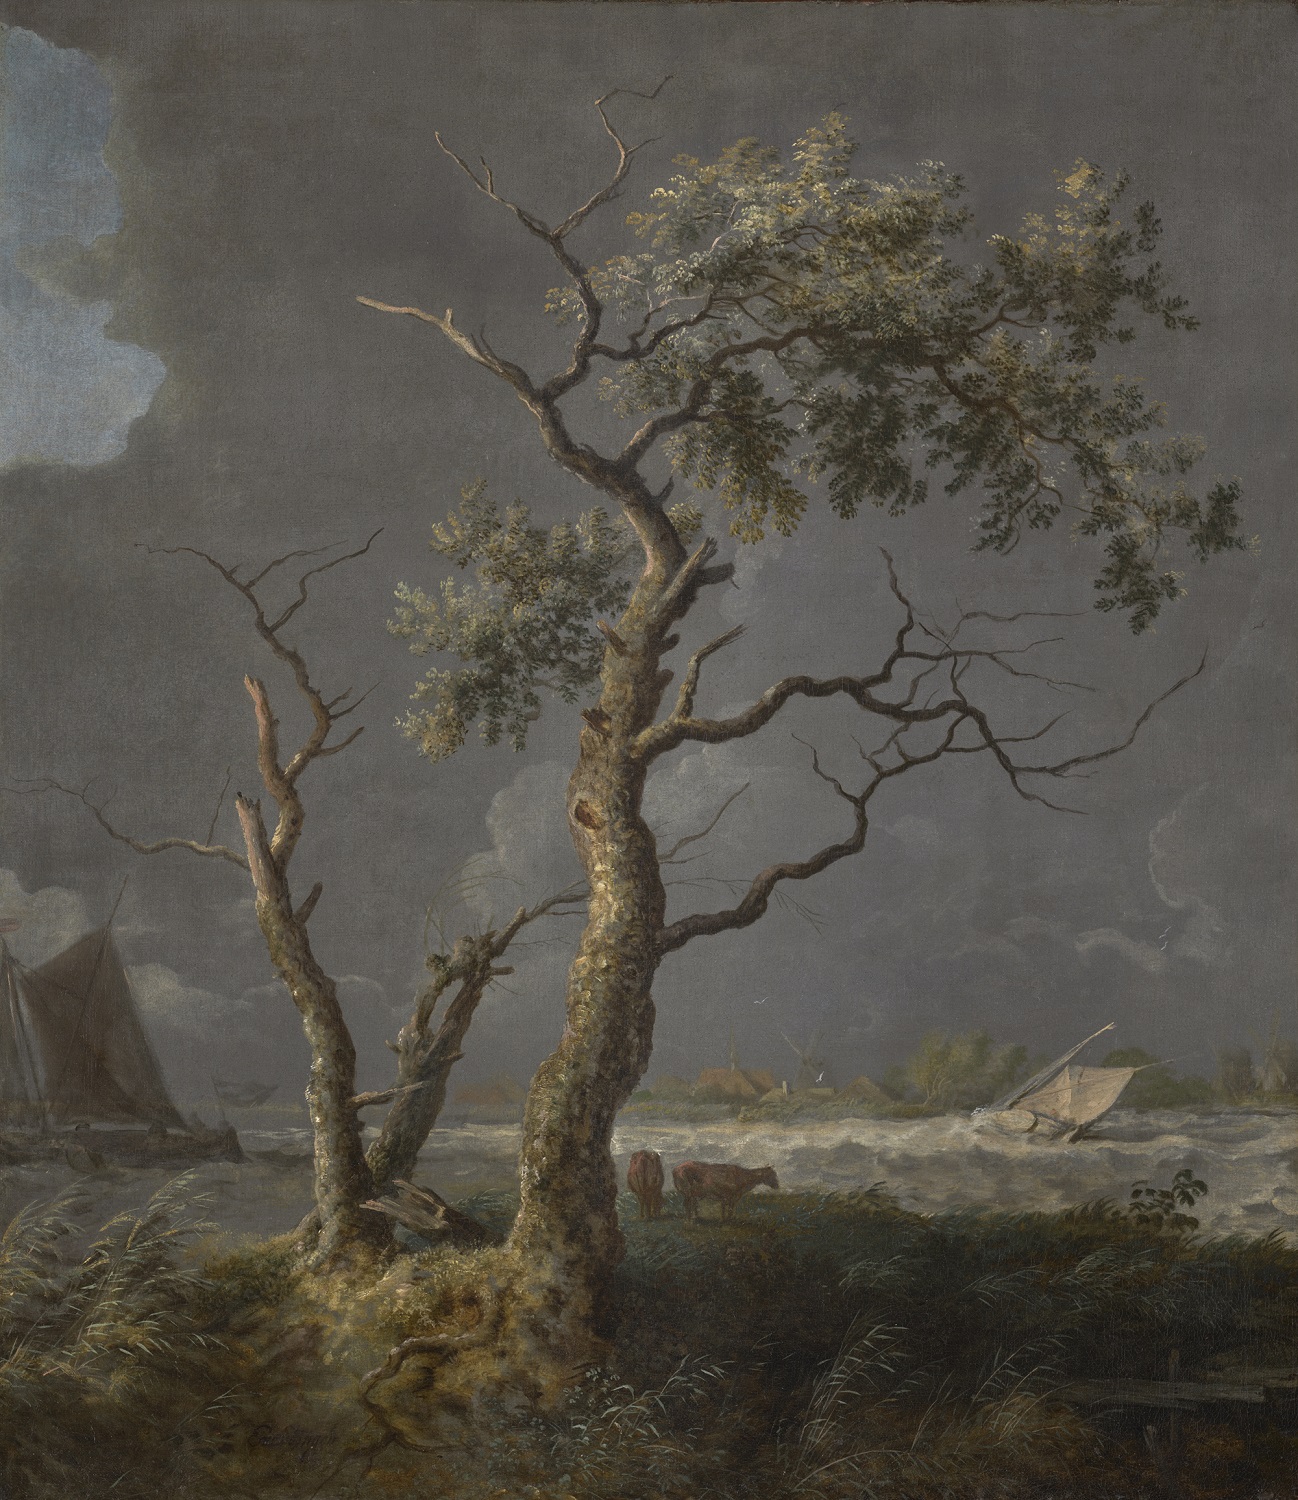 Allart van Everdingen, Bomen aan het water, ca 1650-1660, olieverf op doek, 76,6 x 66,5 cm, Stedelijk Museum Alkmaar / Foto © René Gerritsen